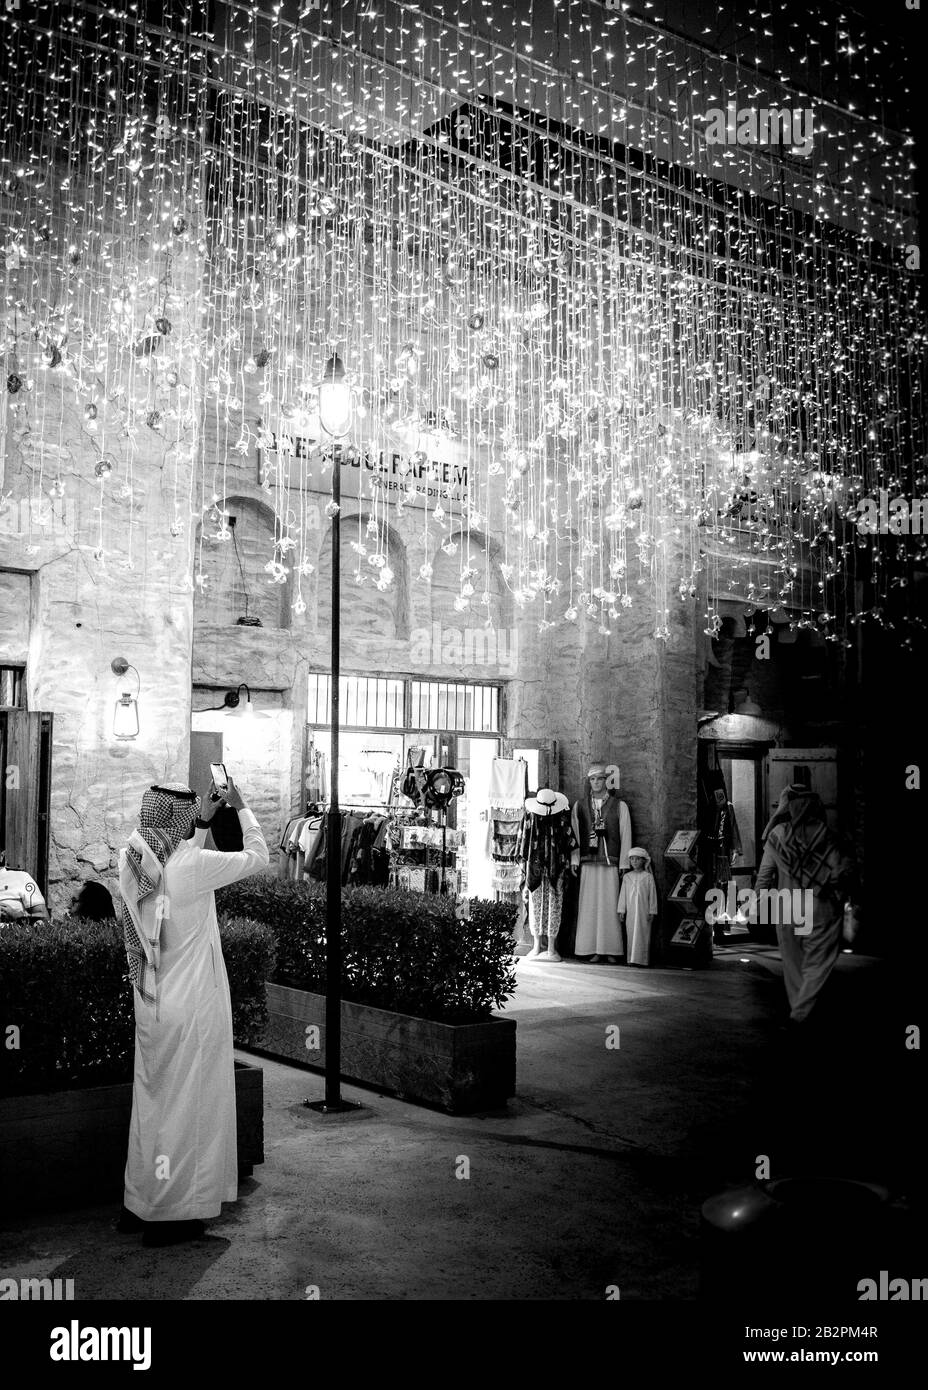 Imagen en blanco y negro de un hombre de pie de longitud completa, vestido con ropa árabe tradicional tomando una foto de una pantalla de iluminación en la ciudad de night.old, Dubai. Foto de stock